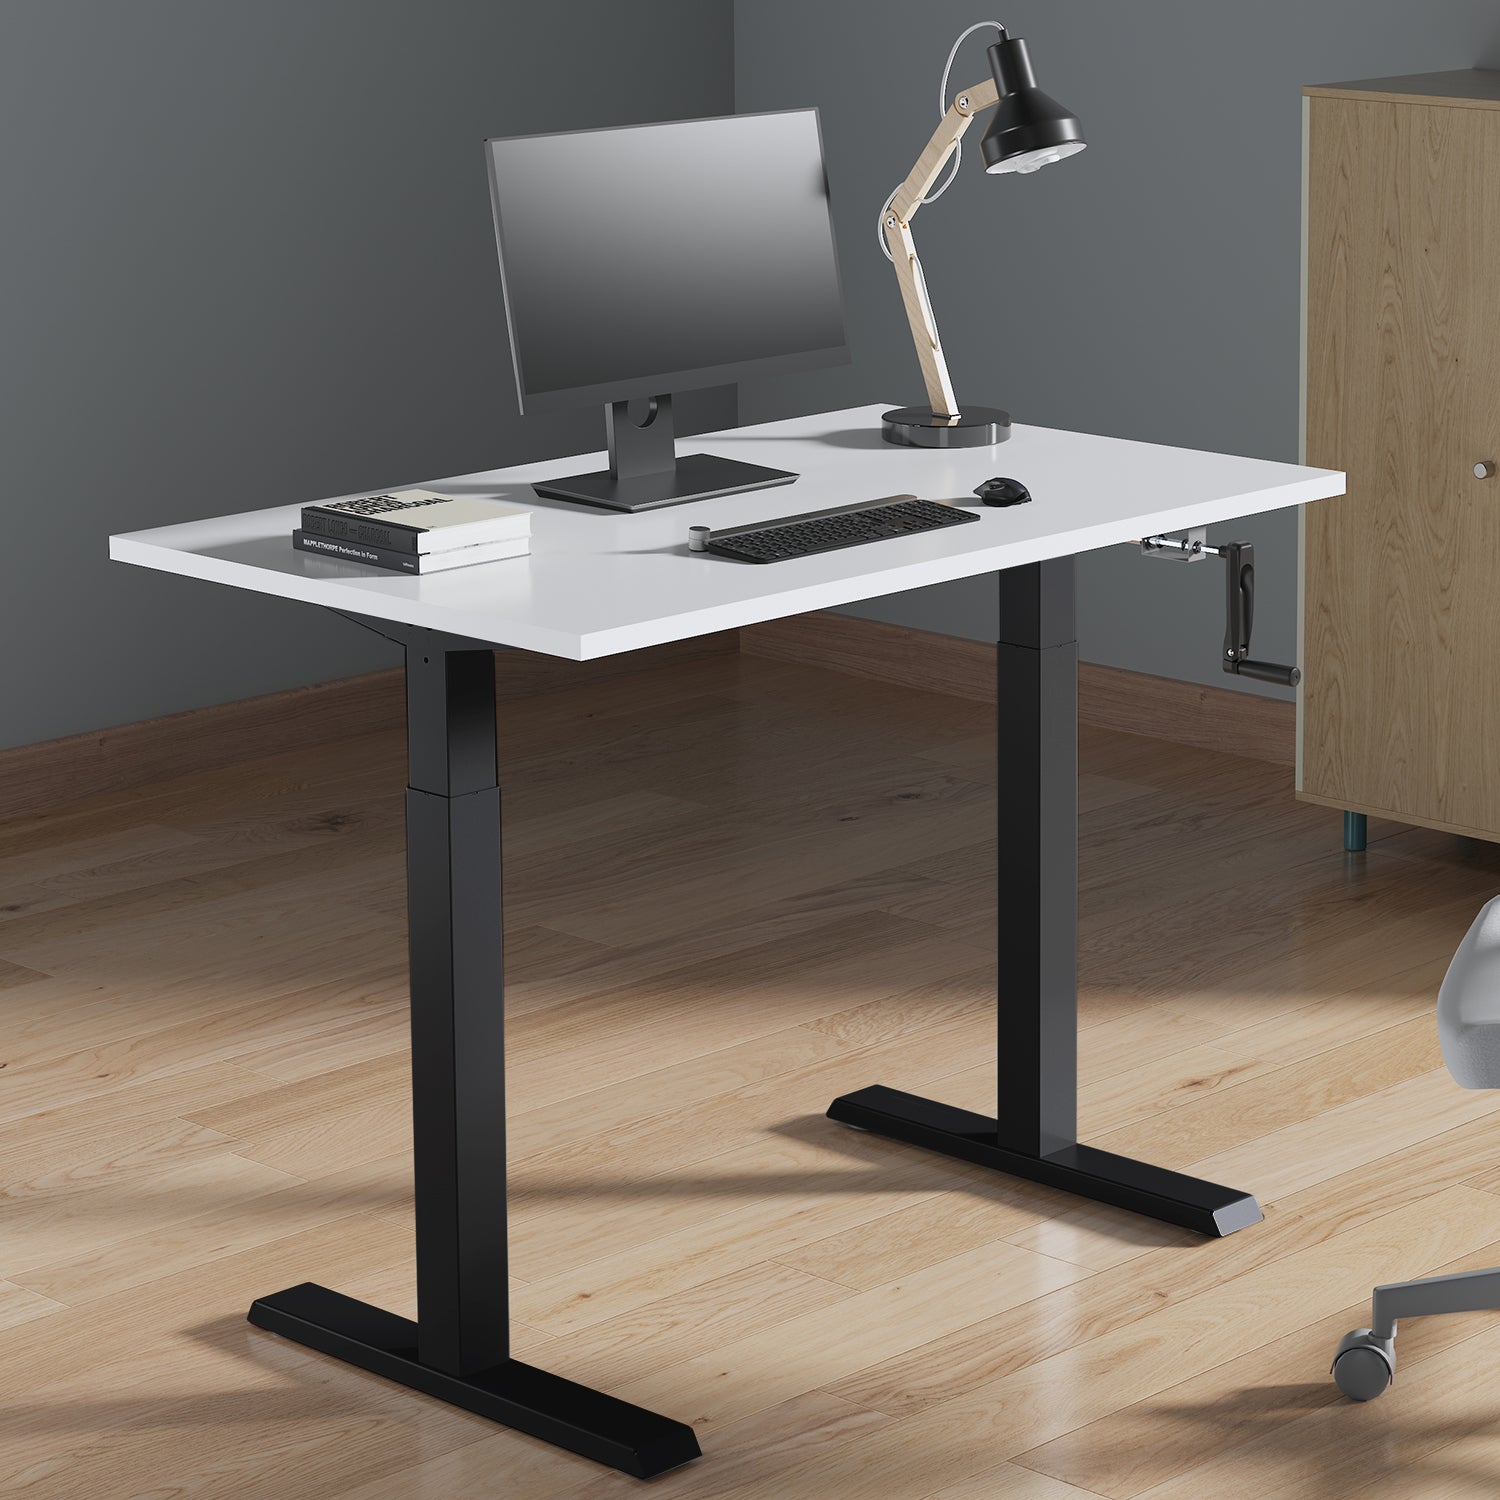 Sitz-Steh-Schreibtisch Tischgestell Manuell Höhenverstellbarer